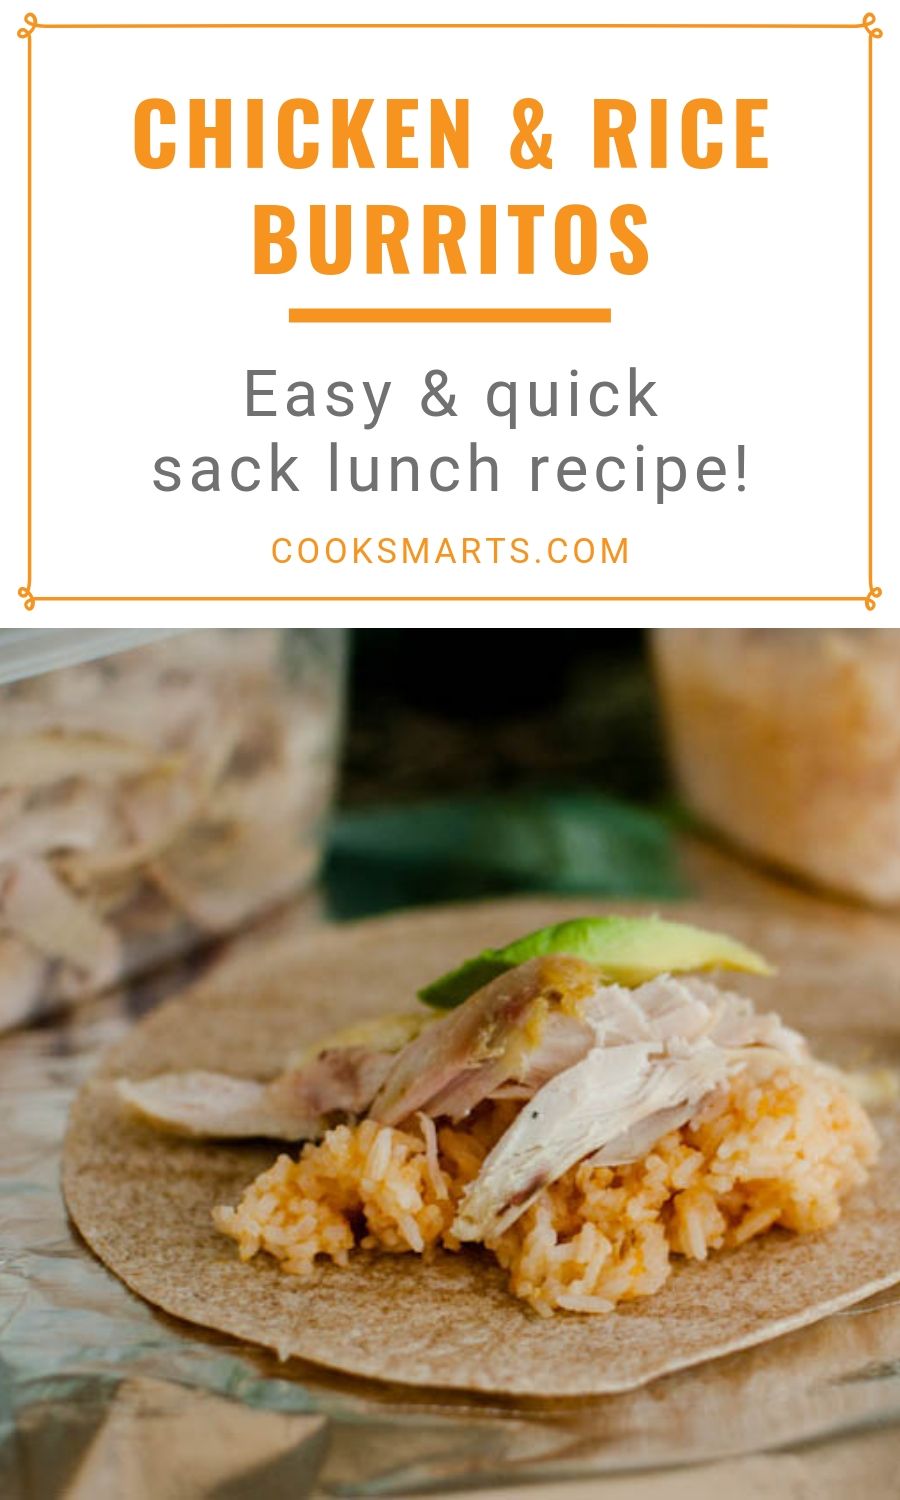 Chicken & Rice Burrito + More School Lunch Ideas | Cook Smarts